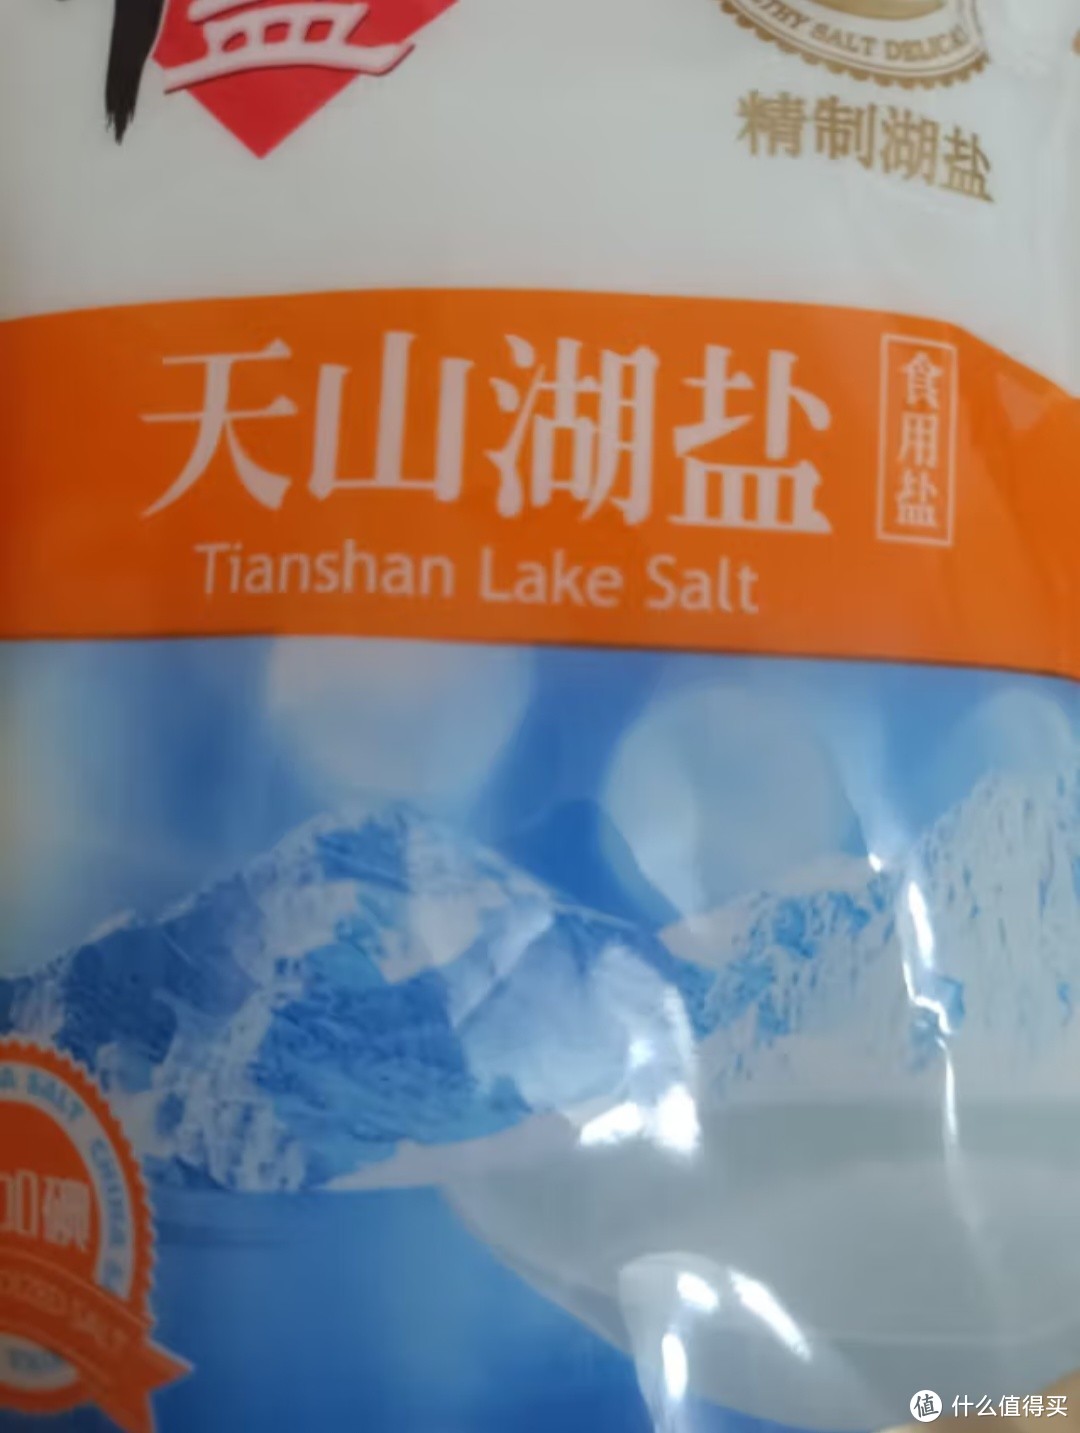 一款无添加剂的天山湖盐